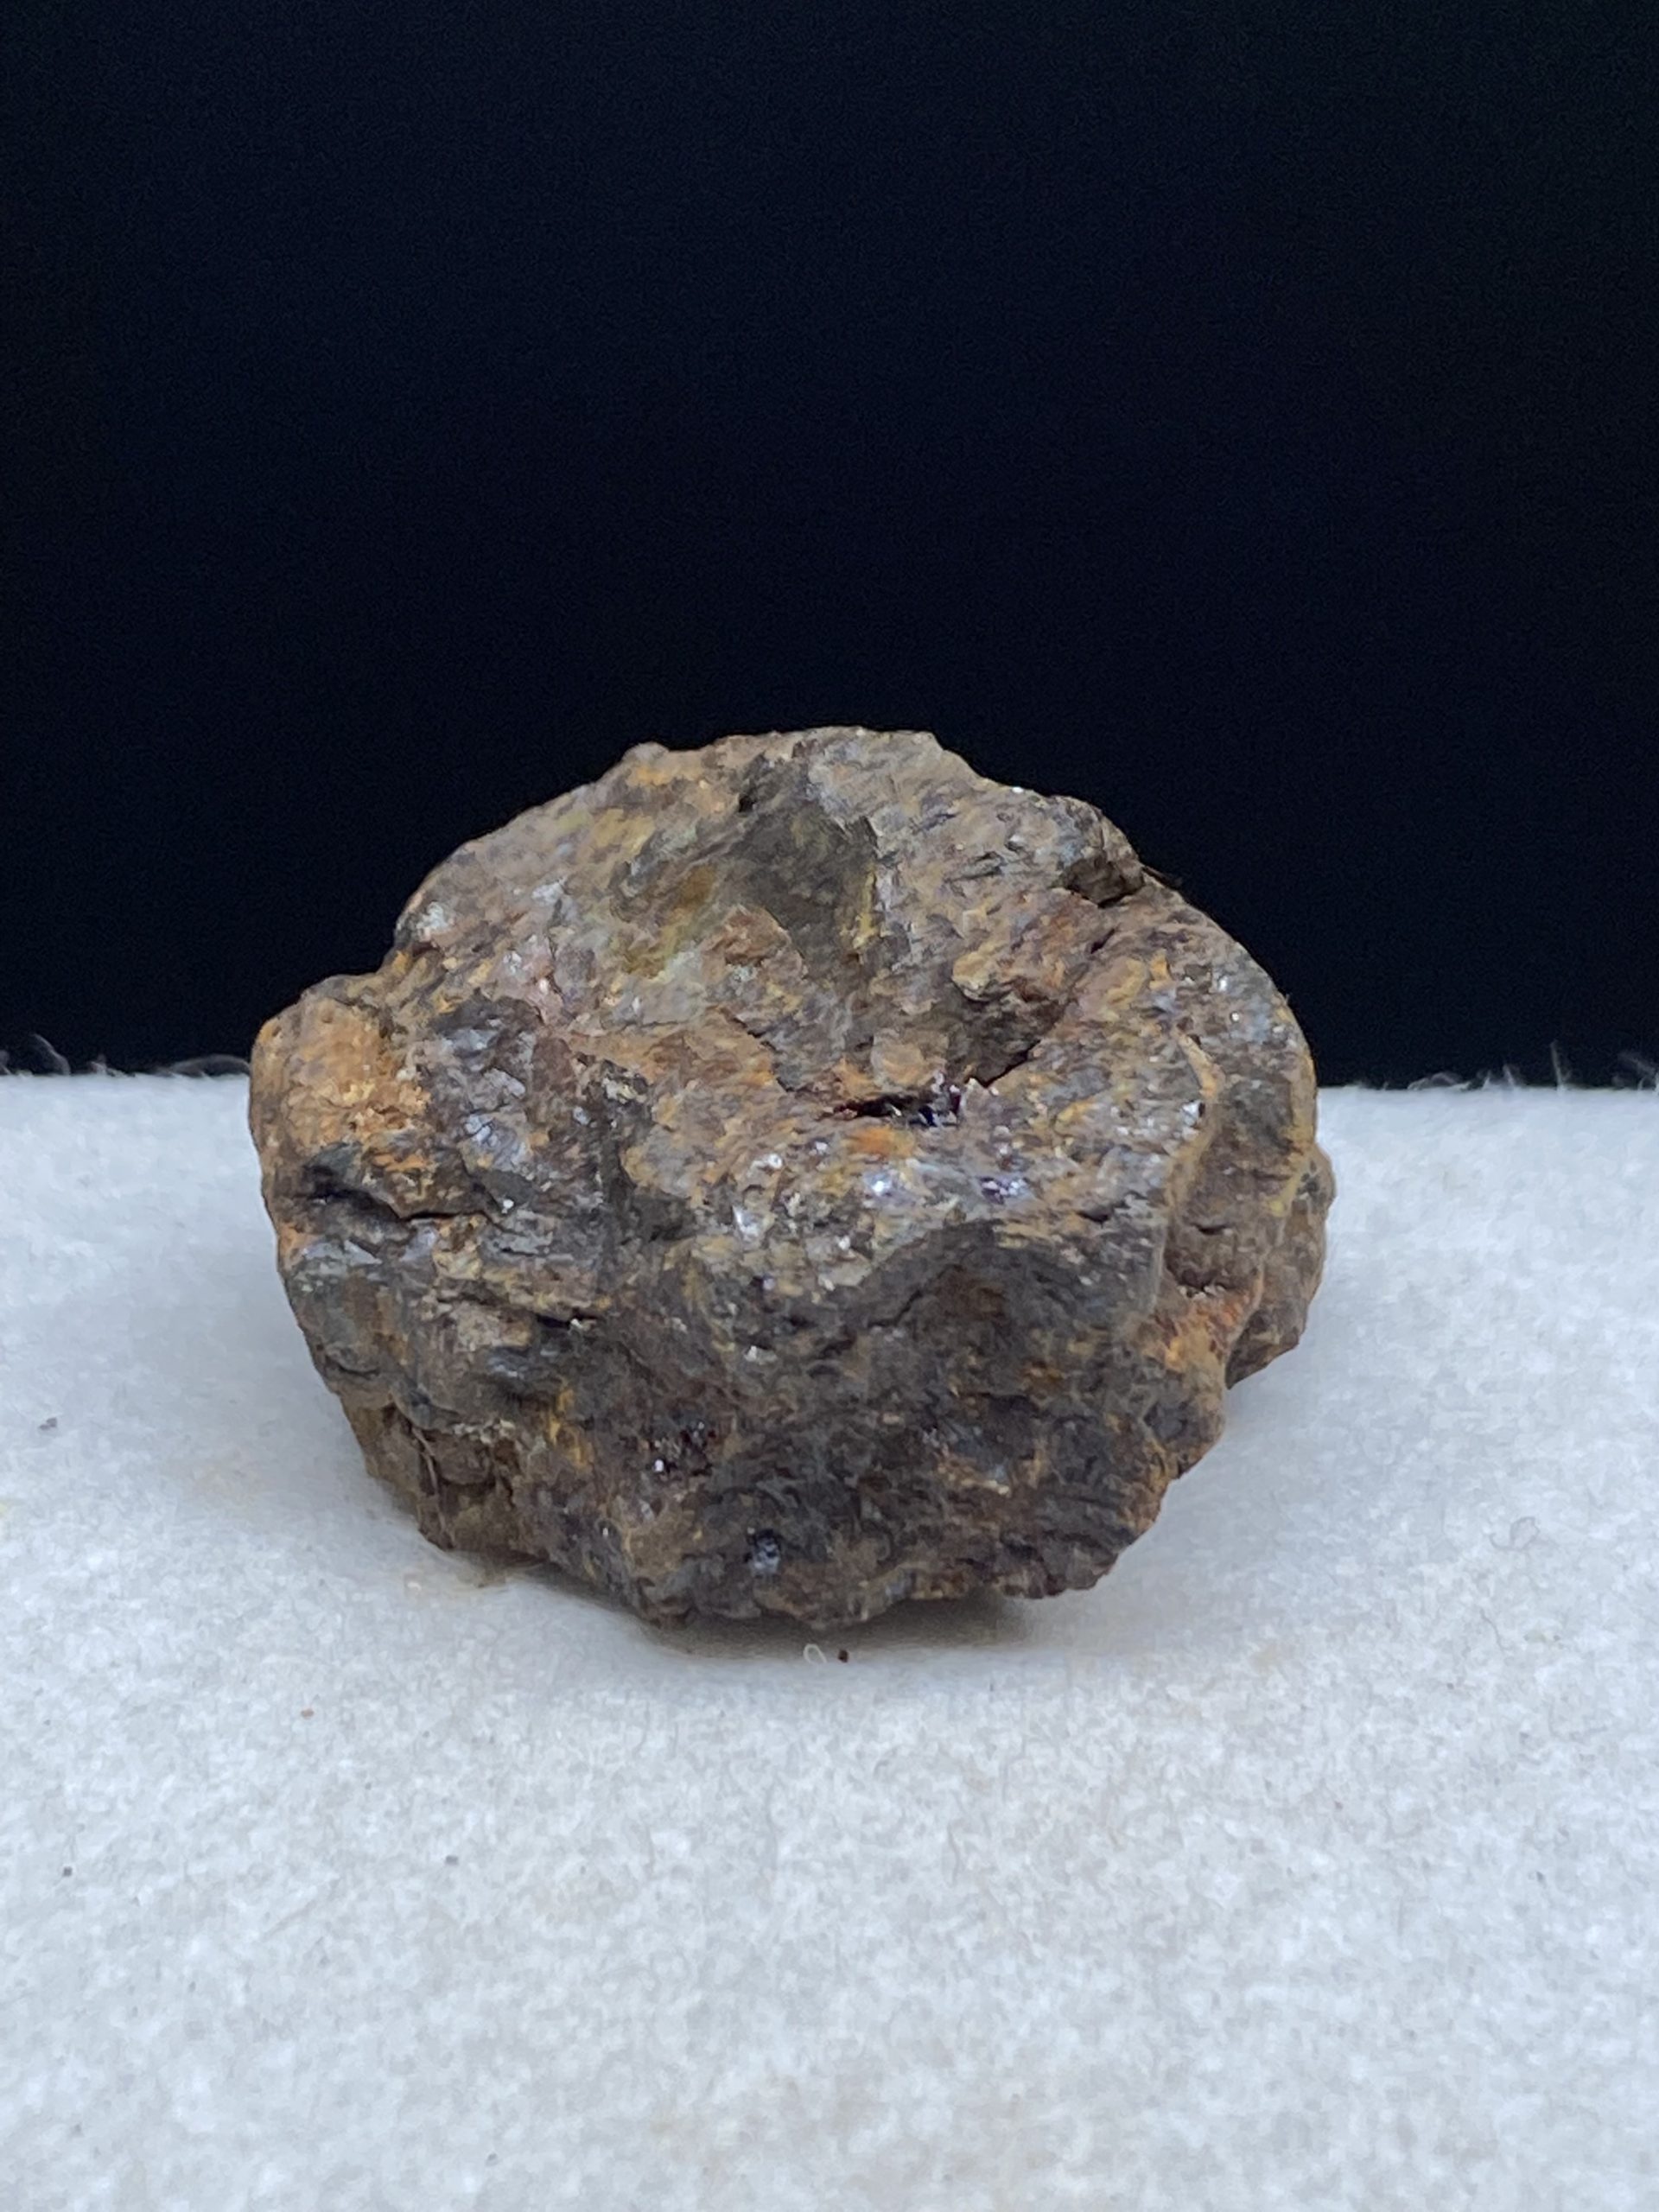 パラサイト隕石 原石 229g セリコ隕石 隕石 メテオライト パラサイト 